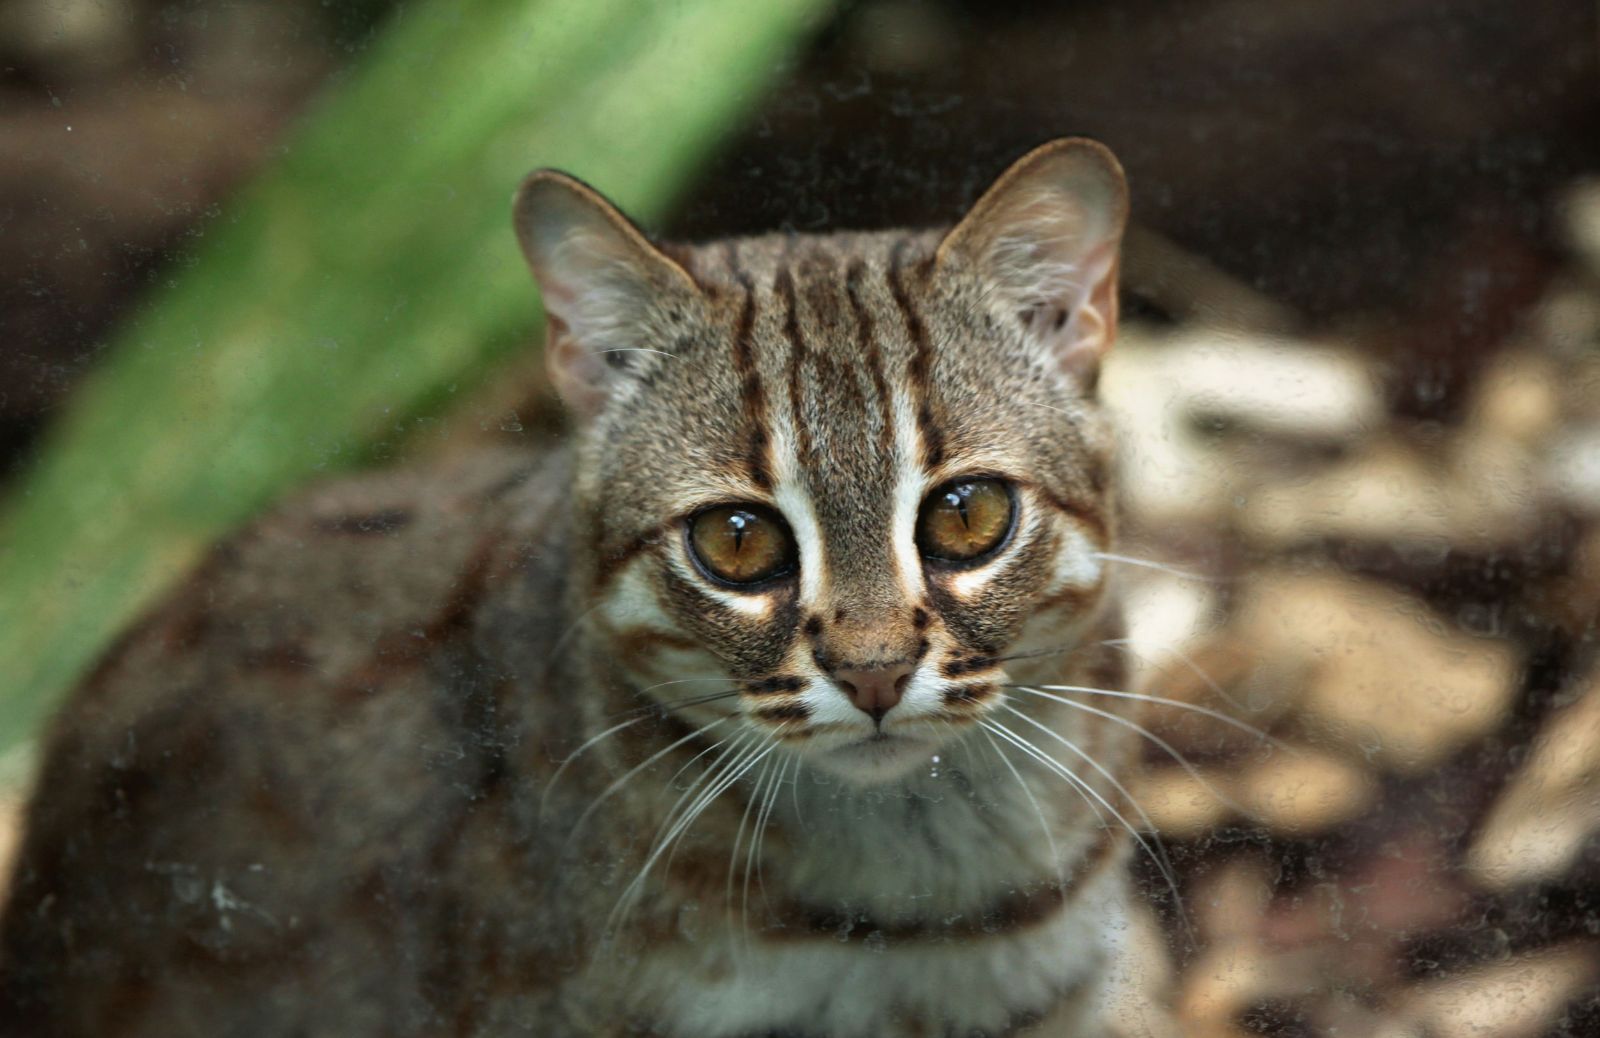 Gatto rugginoso: tutto sul felino selvatico più piccolo del mondo